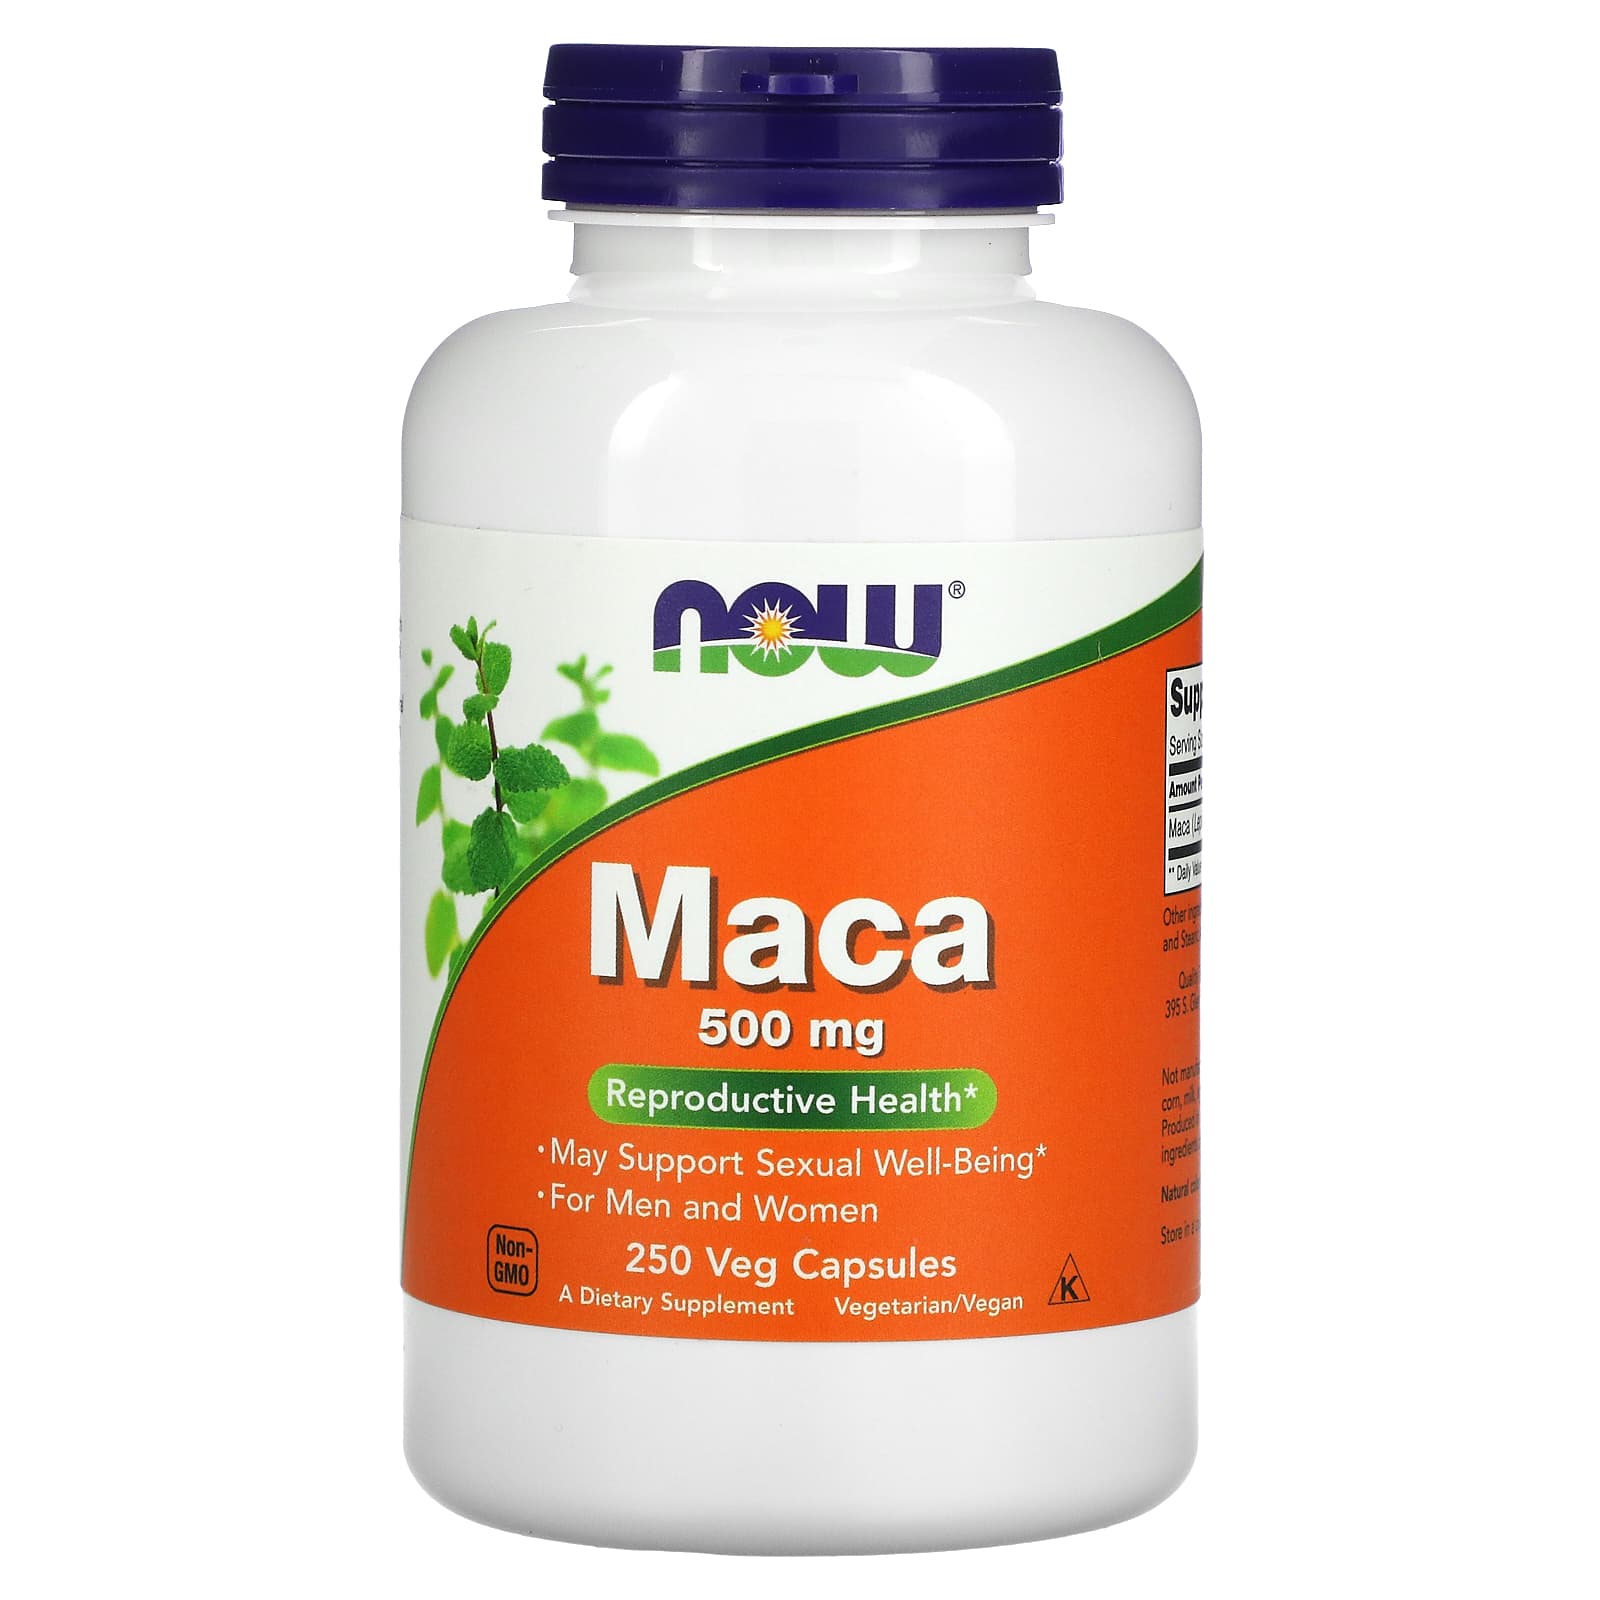 Maca 500 mg 250 Veg Capsules